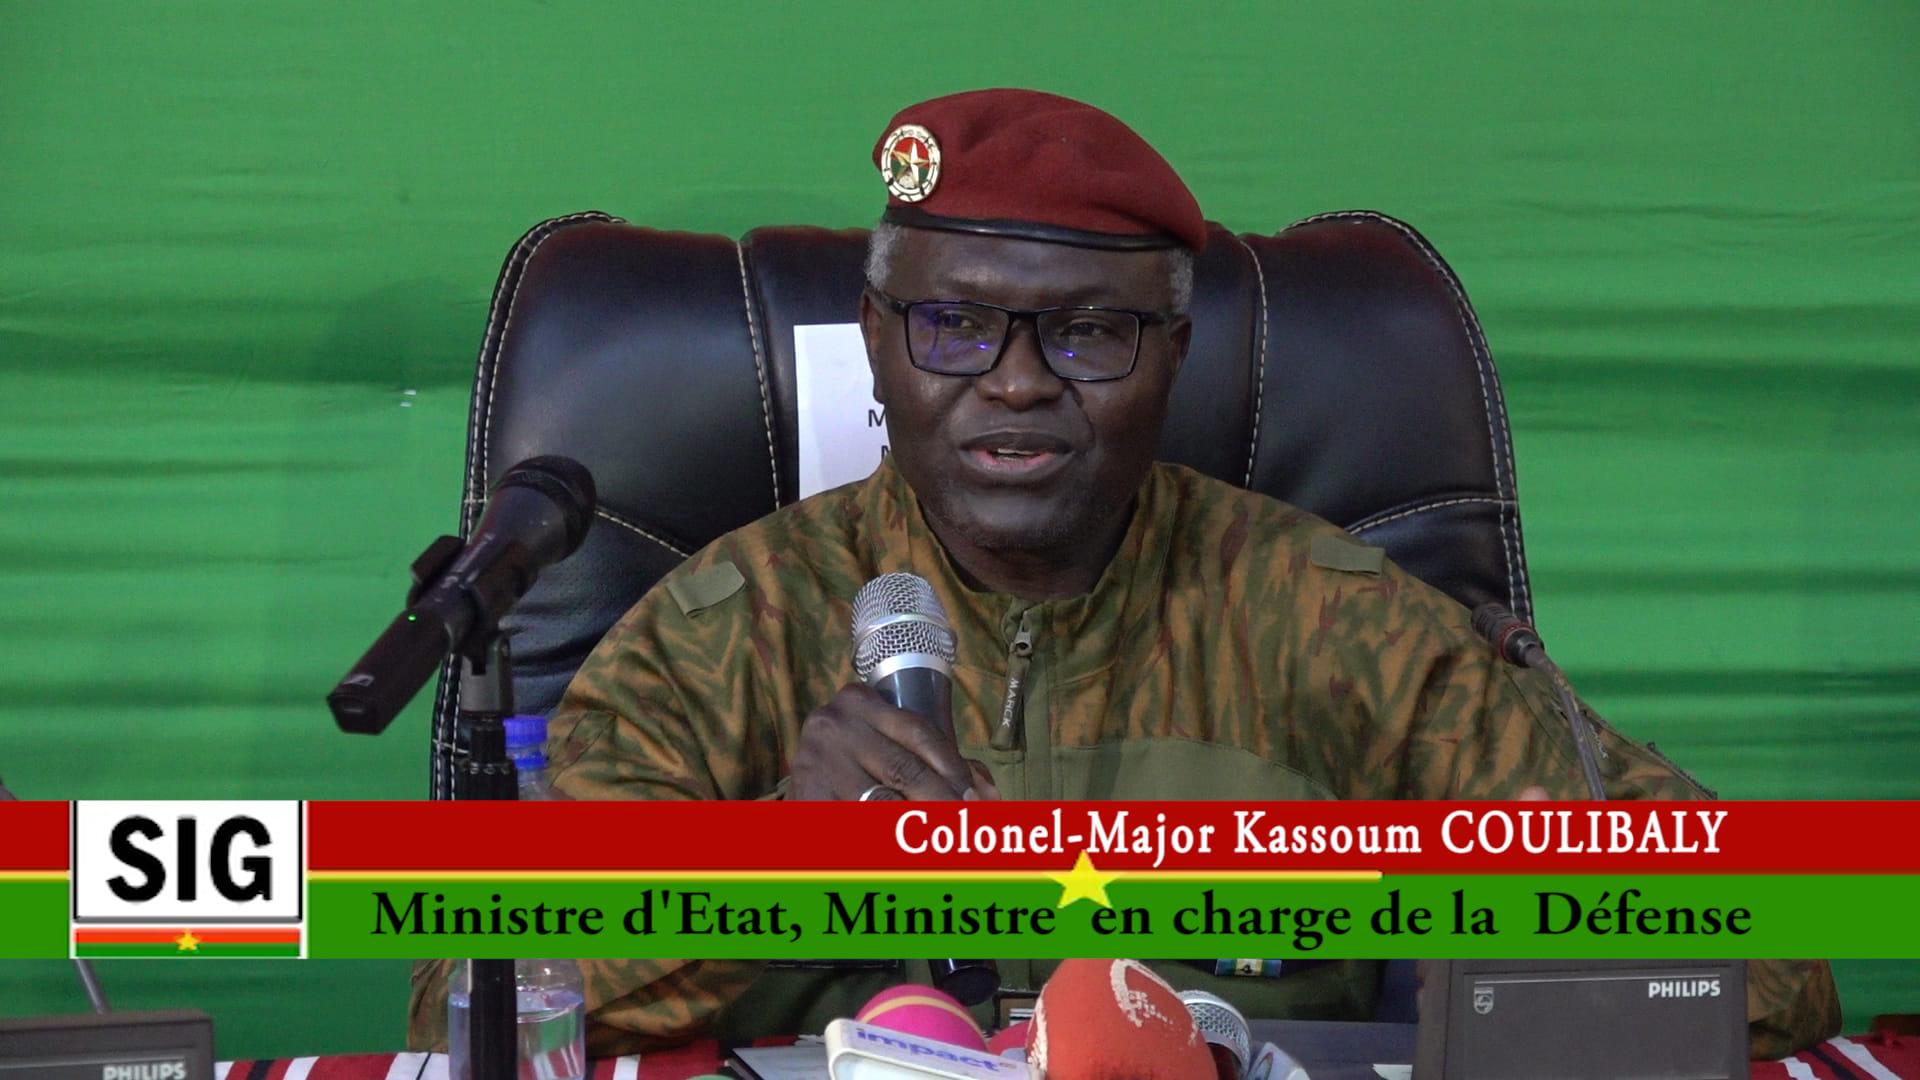 Lutte contre le terrorisme : « De grands pays déclarent combattre AQMI et DAESH, mais refusent de nous aider », déclare en substance le colonel-major Kassoum Coulibaly 